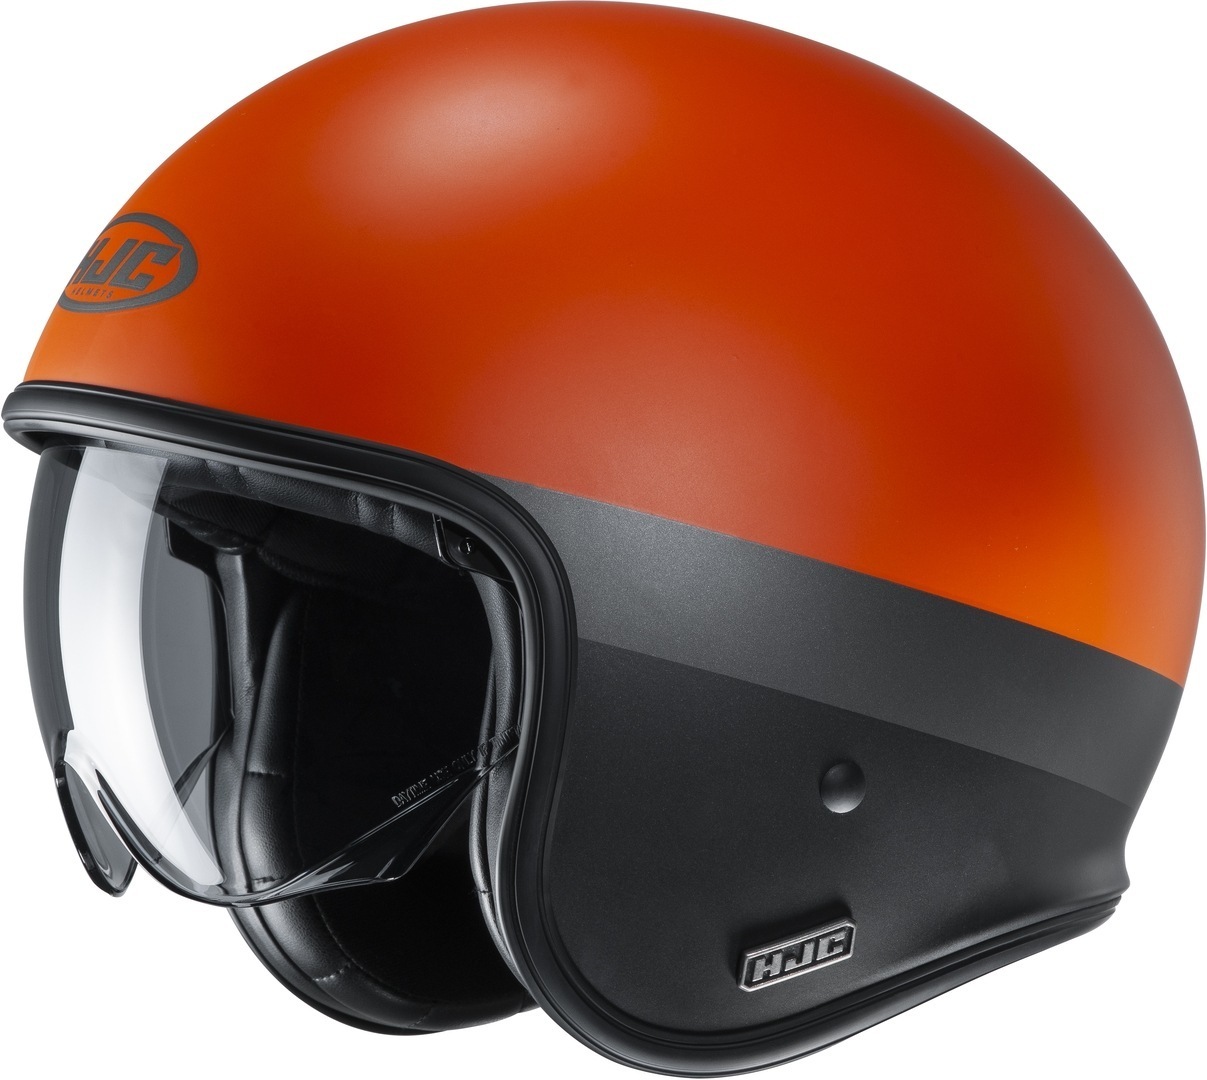 Шлем HJC V30 Perot реактивный, оранжевый/черный реактивный шлем v30 hjc черный мэтт